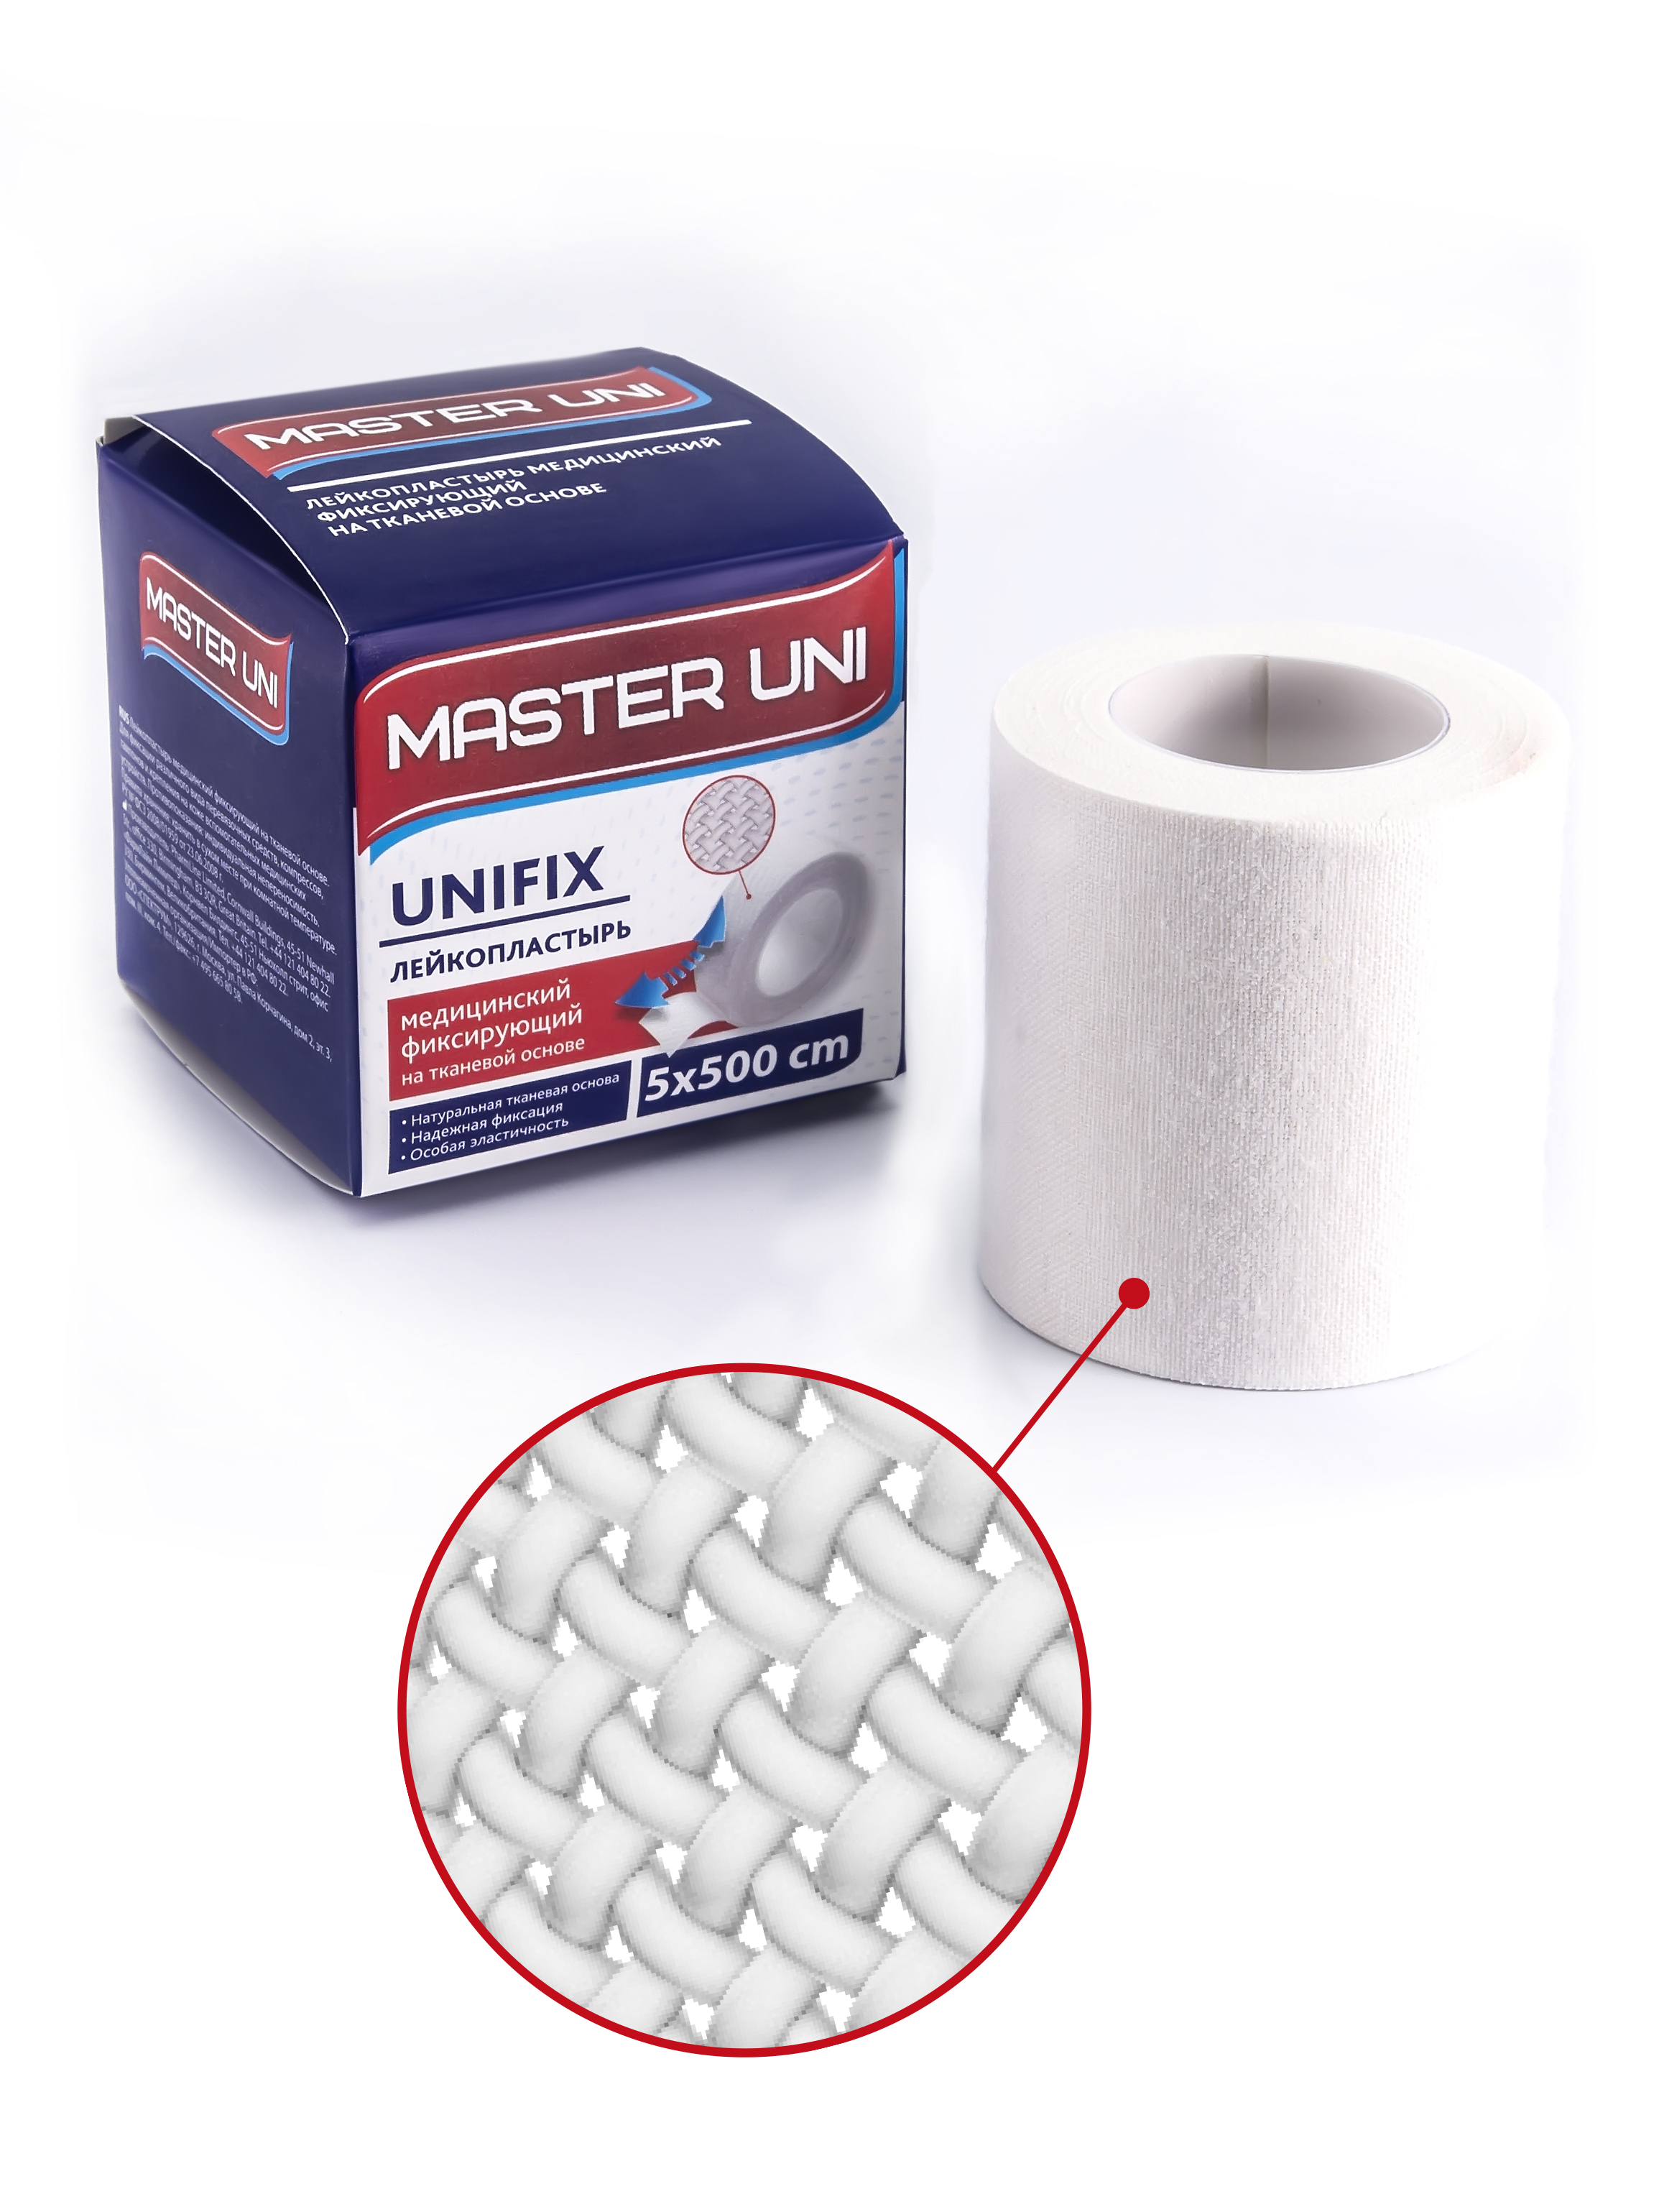 UNIFIX Лейкопластырь 5 х 500 см на тканевой основе, Пластырь Master Uni Unifix фиксирующий на тканевой основе 5 х 500 см  - купить со скидкой